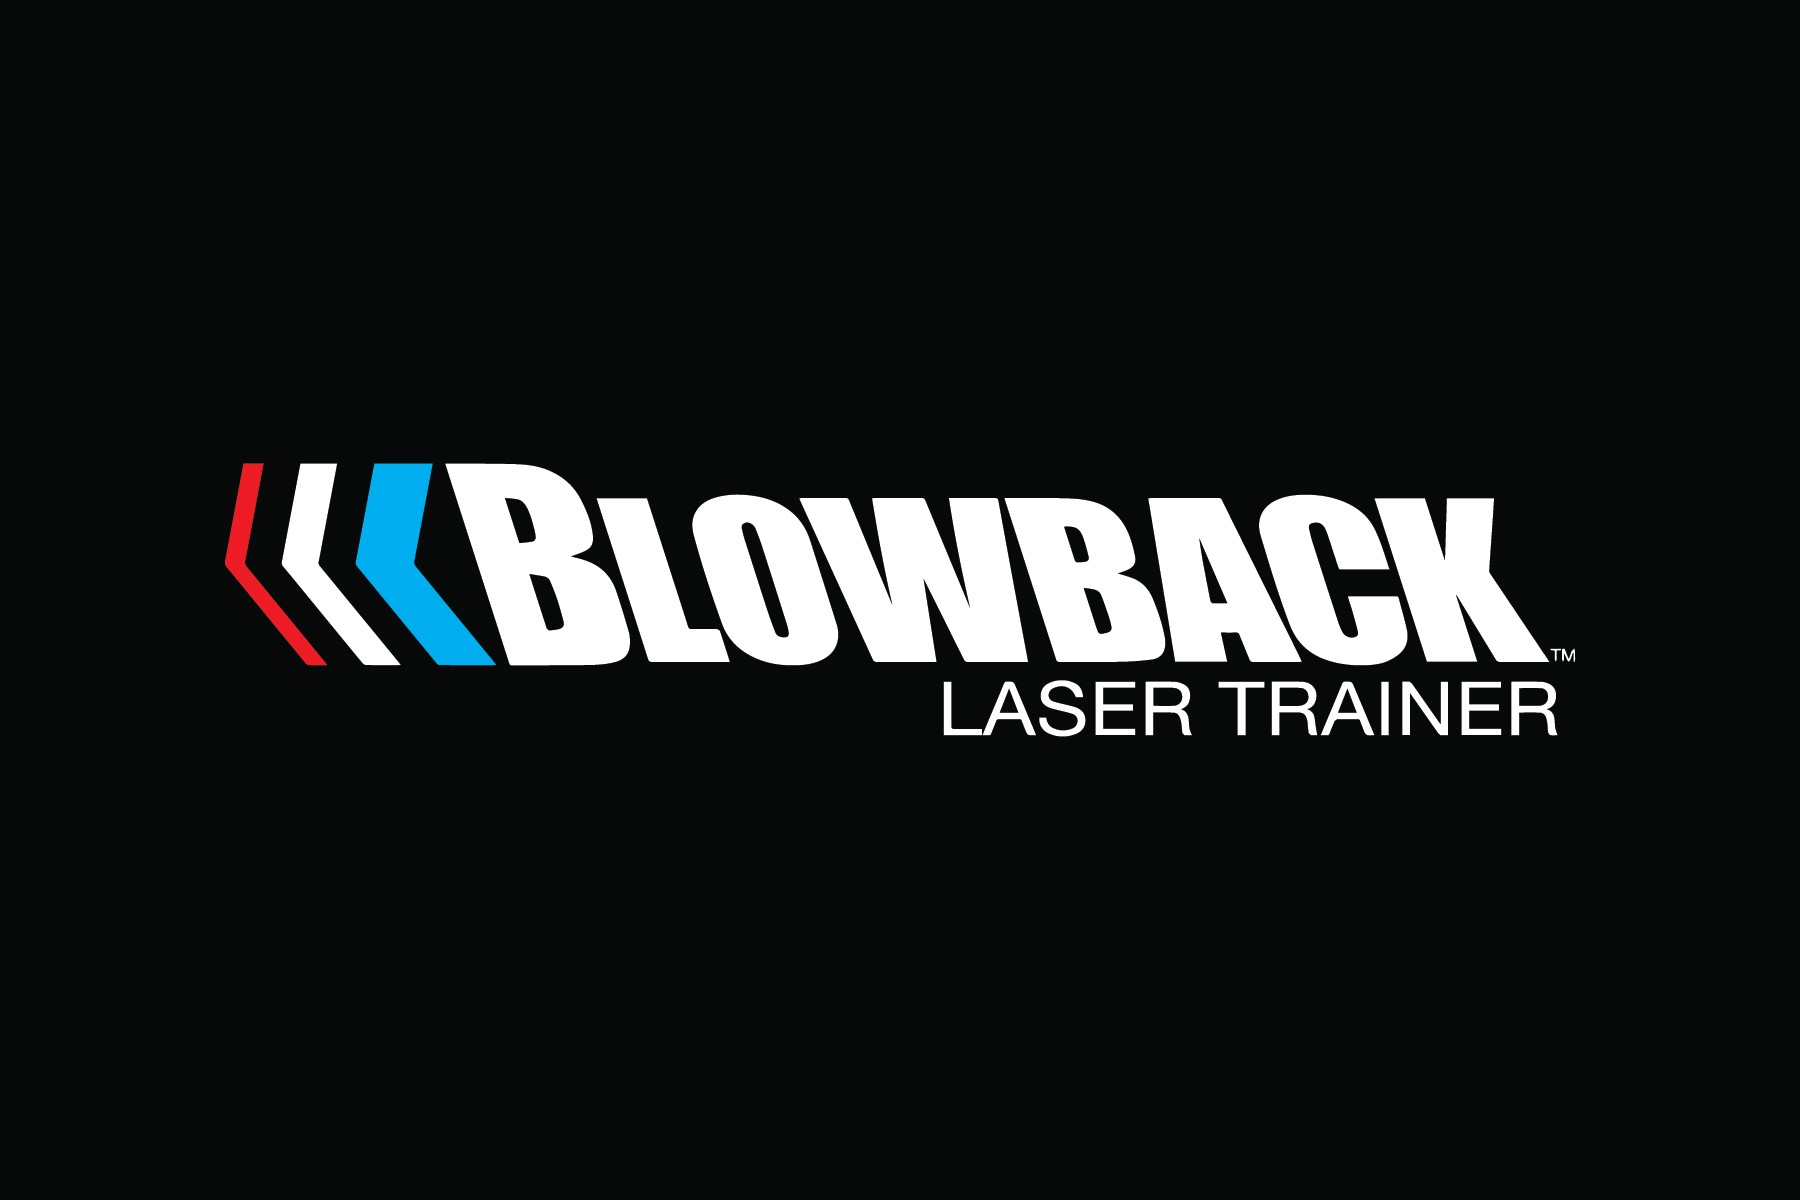 Blowbacklasertrainer Logo